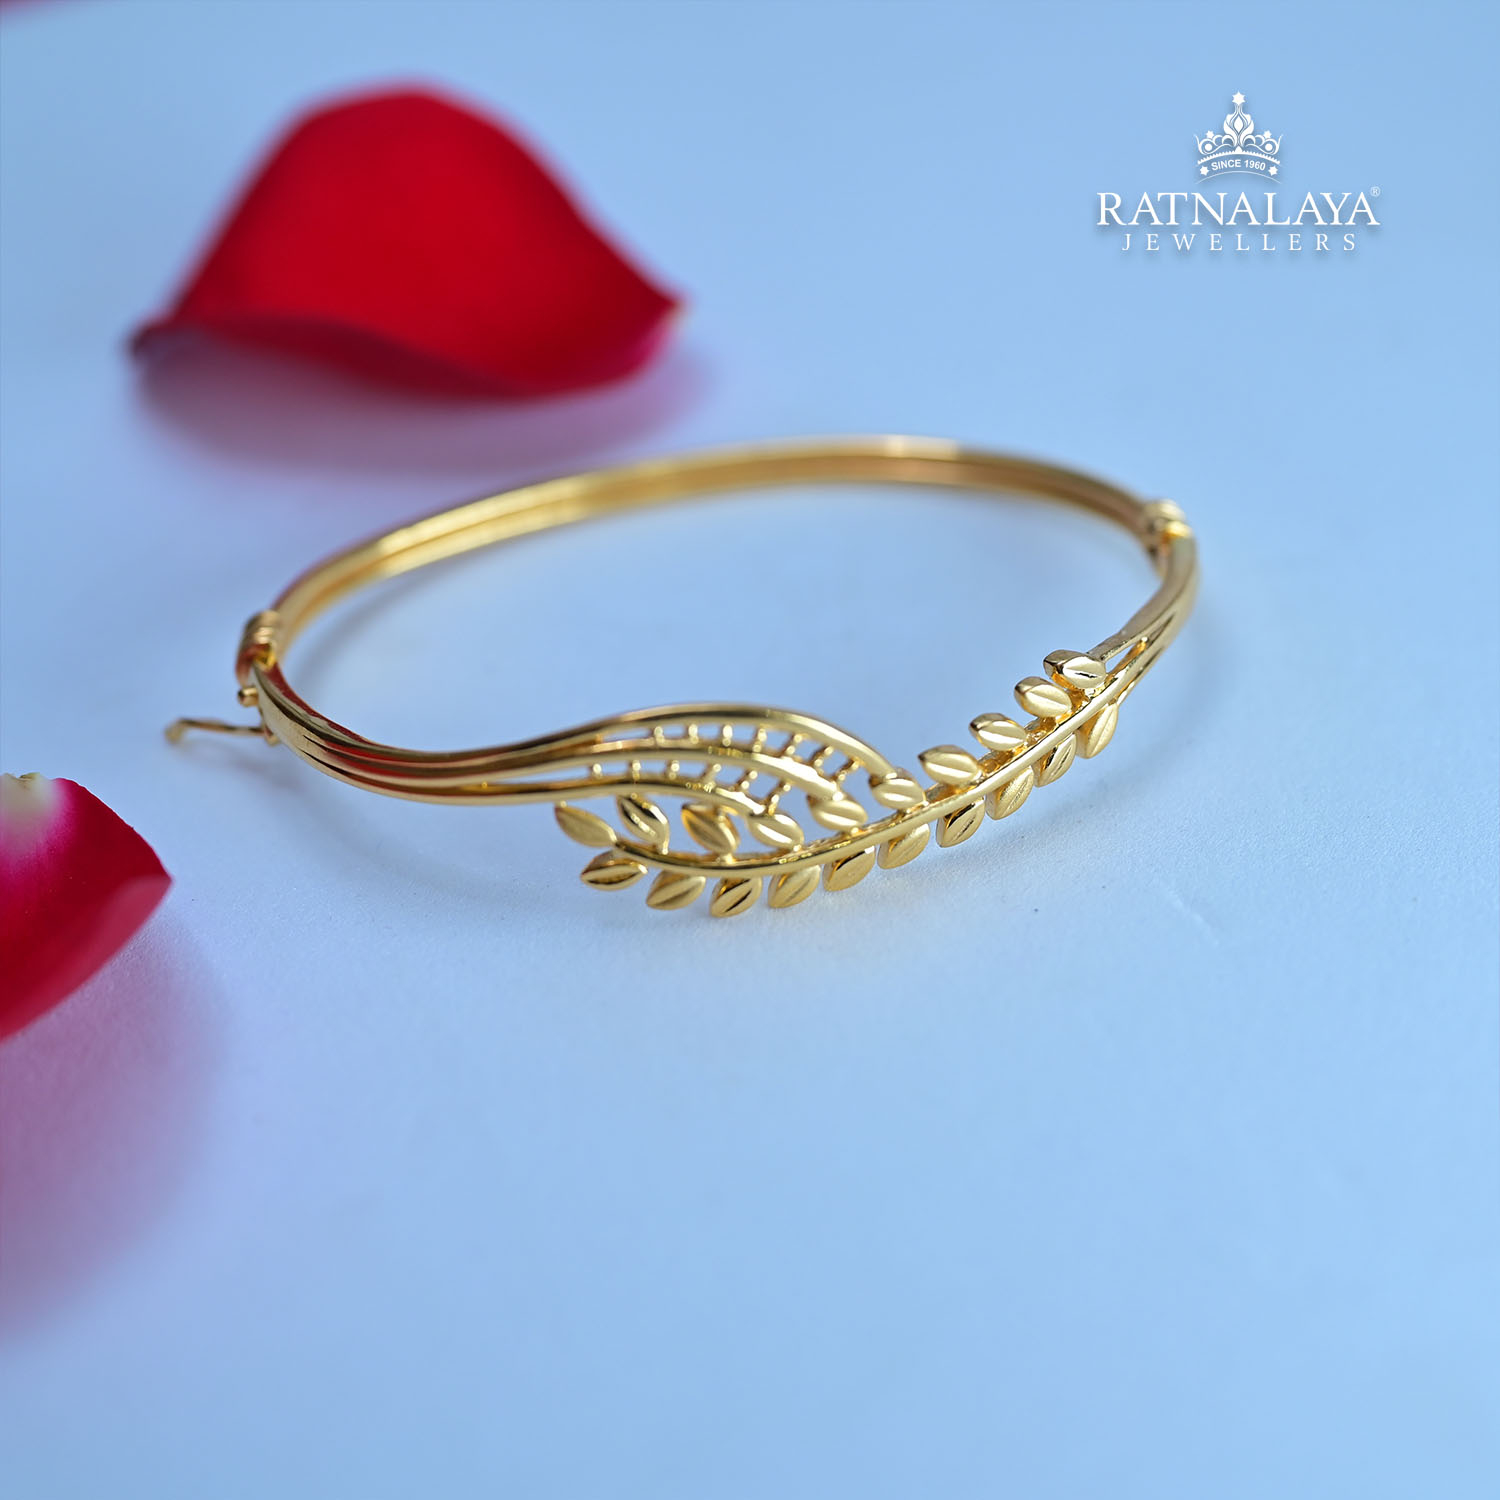 Marvellous & Stunning Dubai Gold Bracelet /Ring Bracelet Design - YouTube